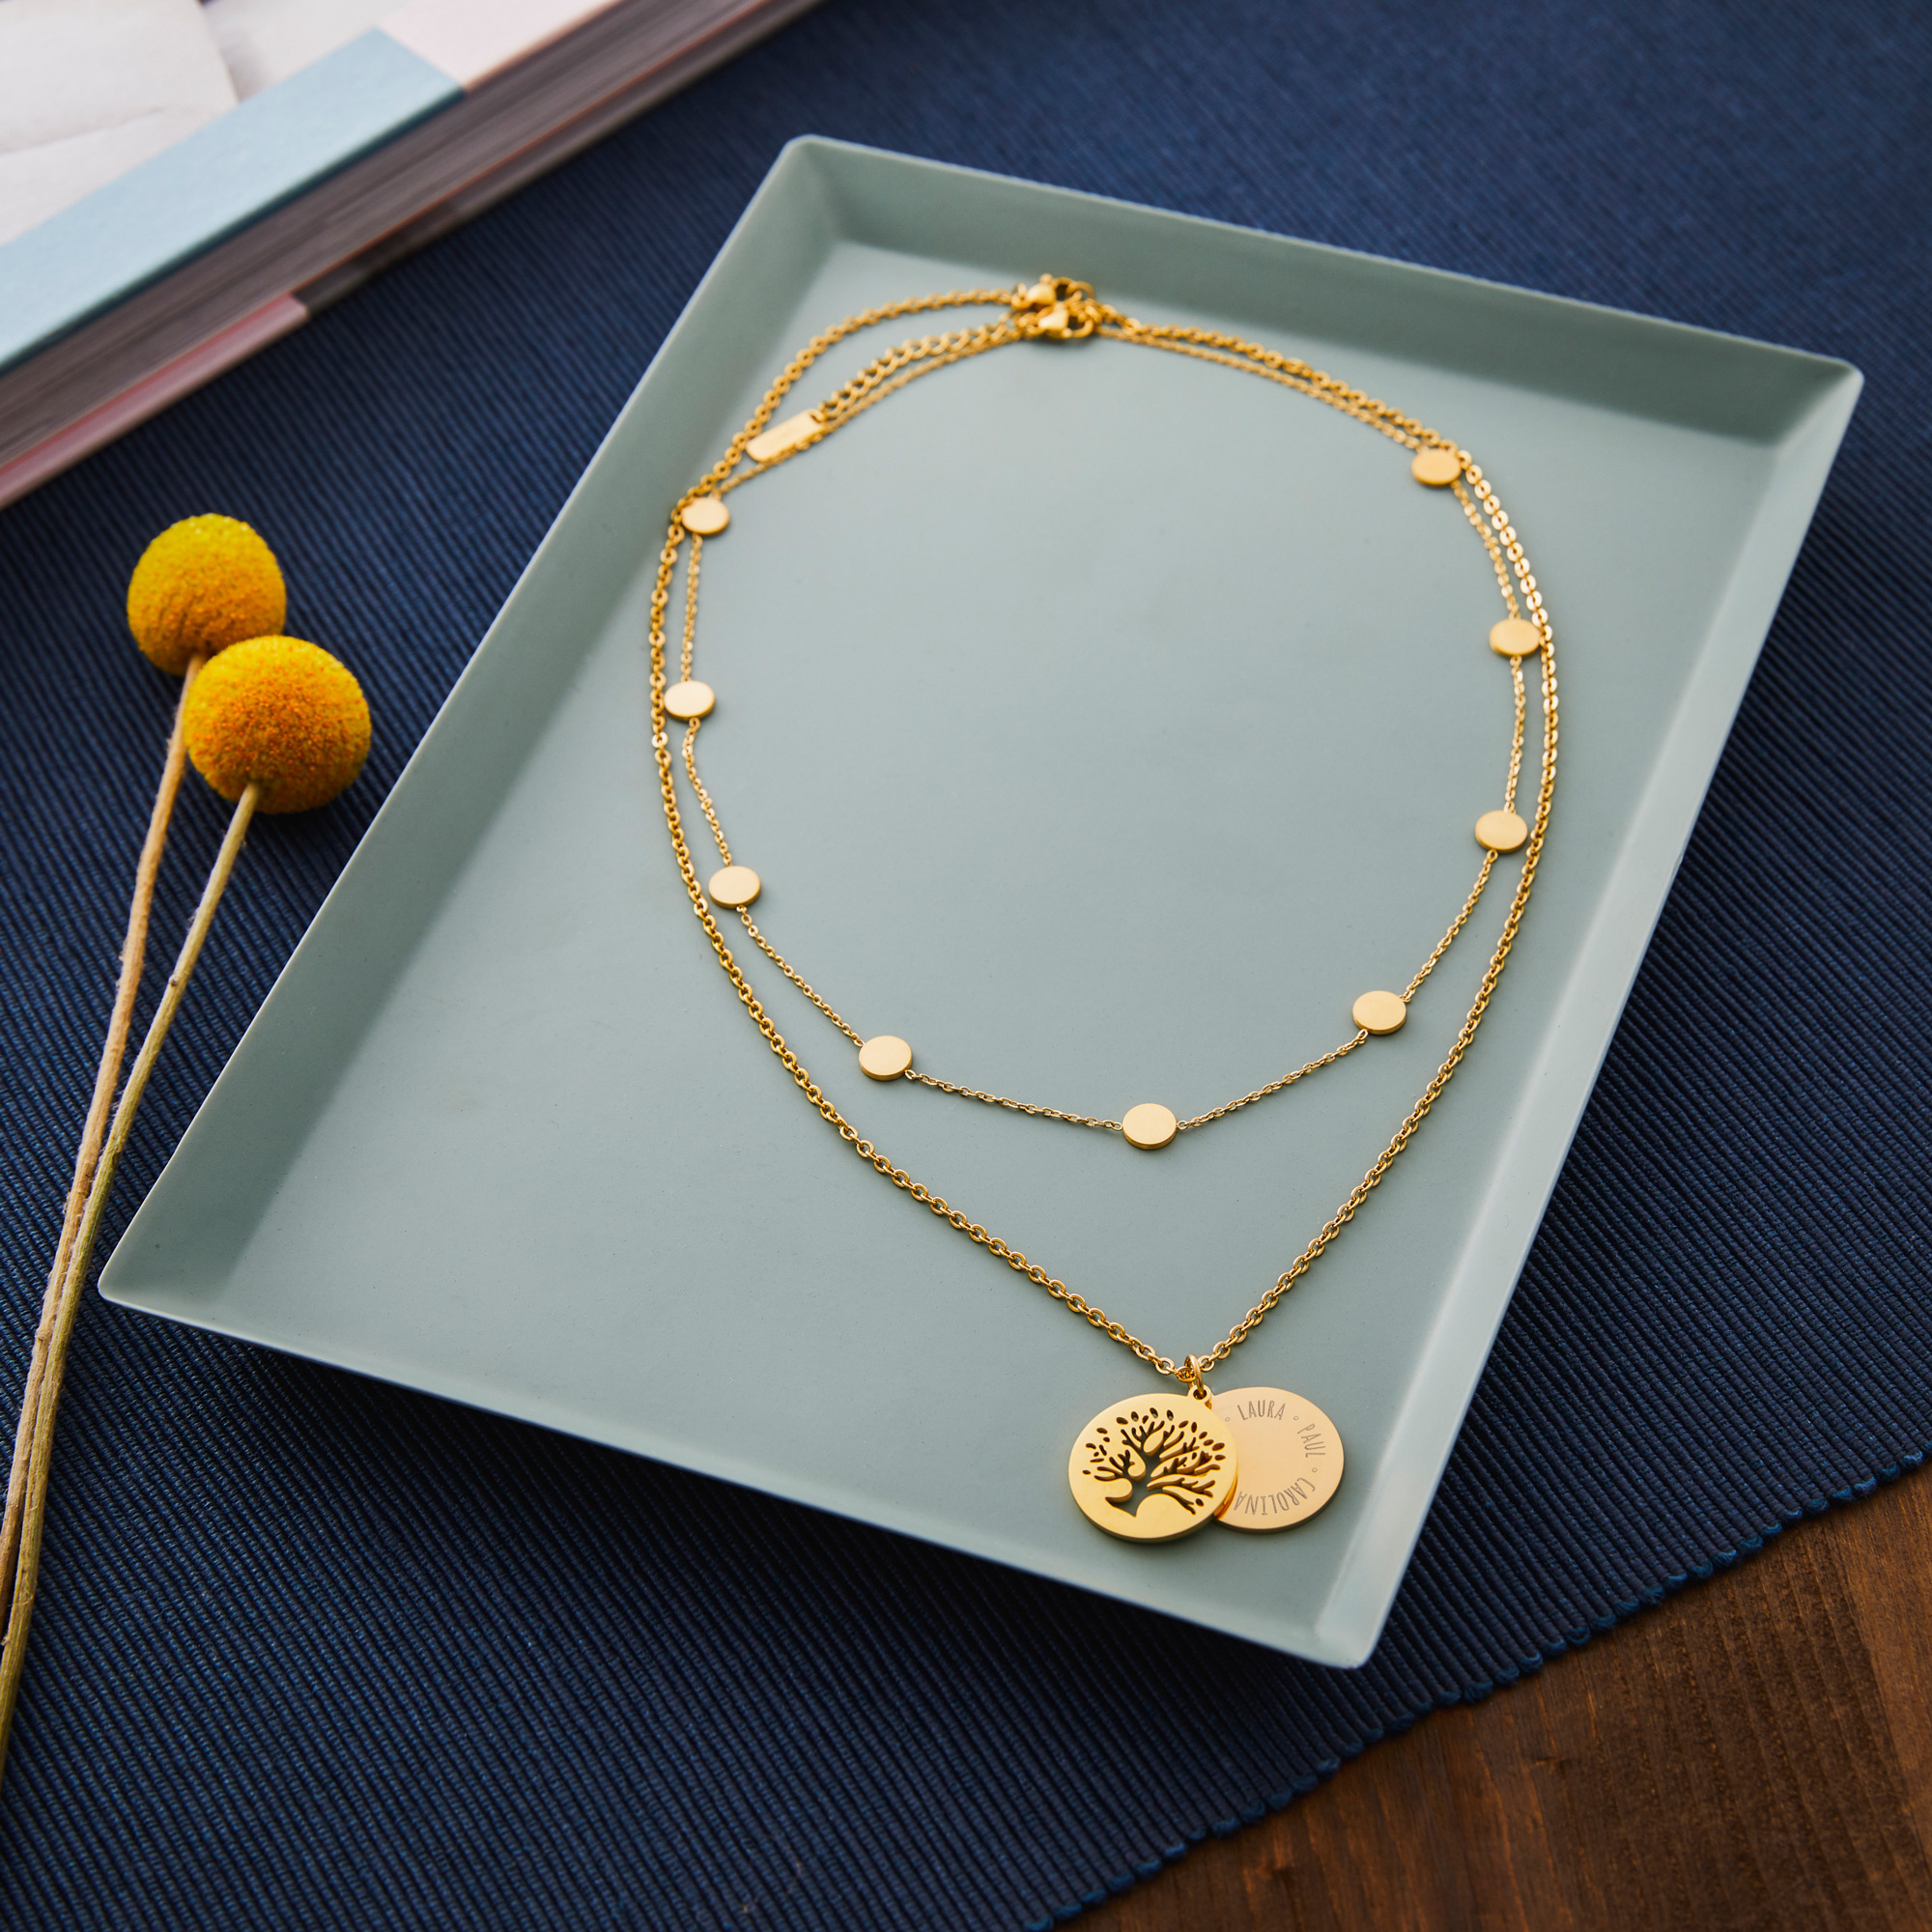 Set Layering Kette und Halskette Baum - Gold - Personalisiert